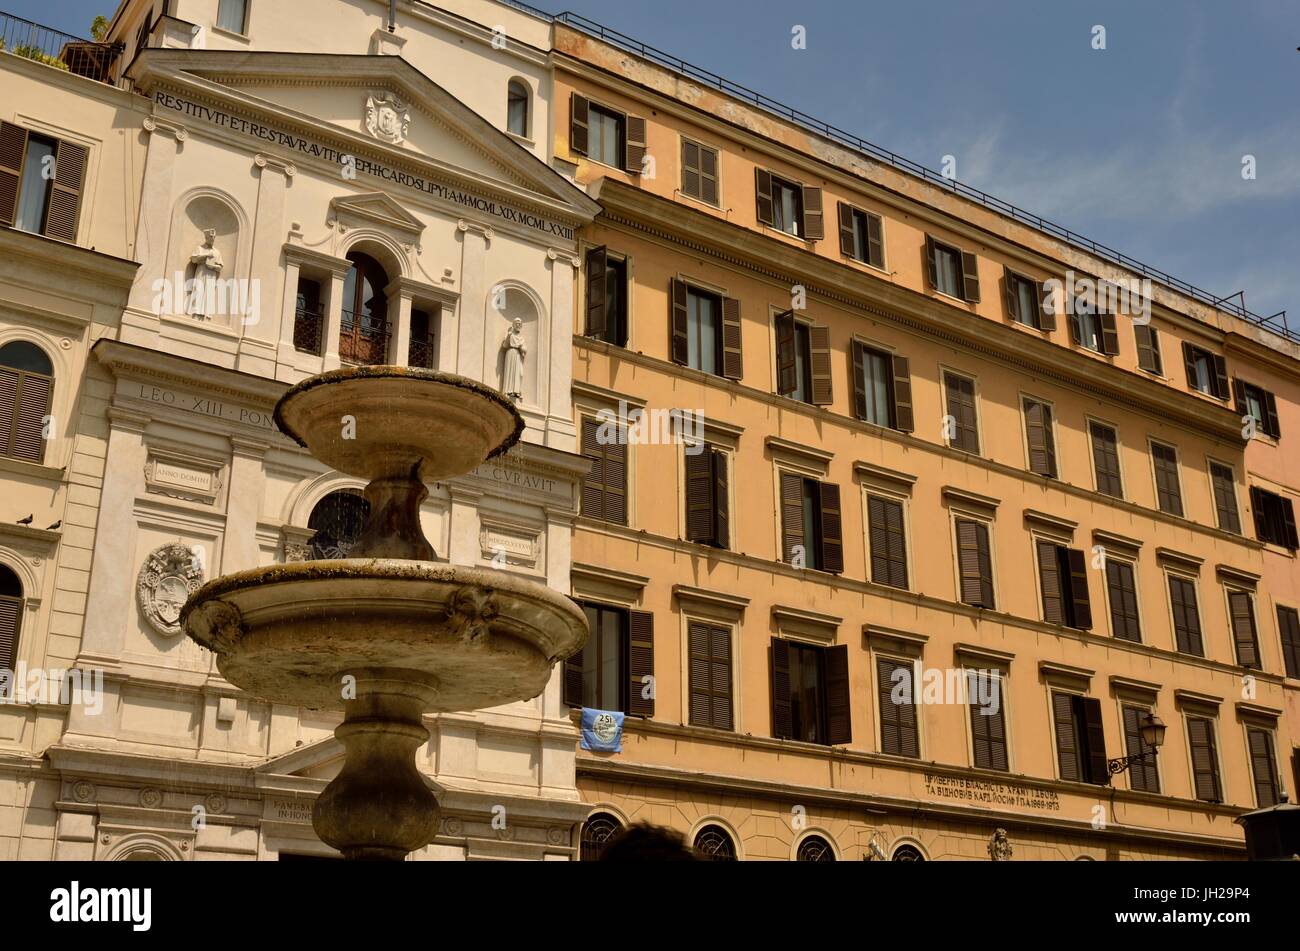 La fontaine de piazza romaine ancienne scène de rue en milieu urbain. Un bâtiment en arrière-plan et une fontaine au premier plan, Rome, Italie Banque D'Images